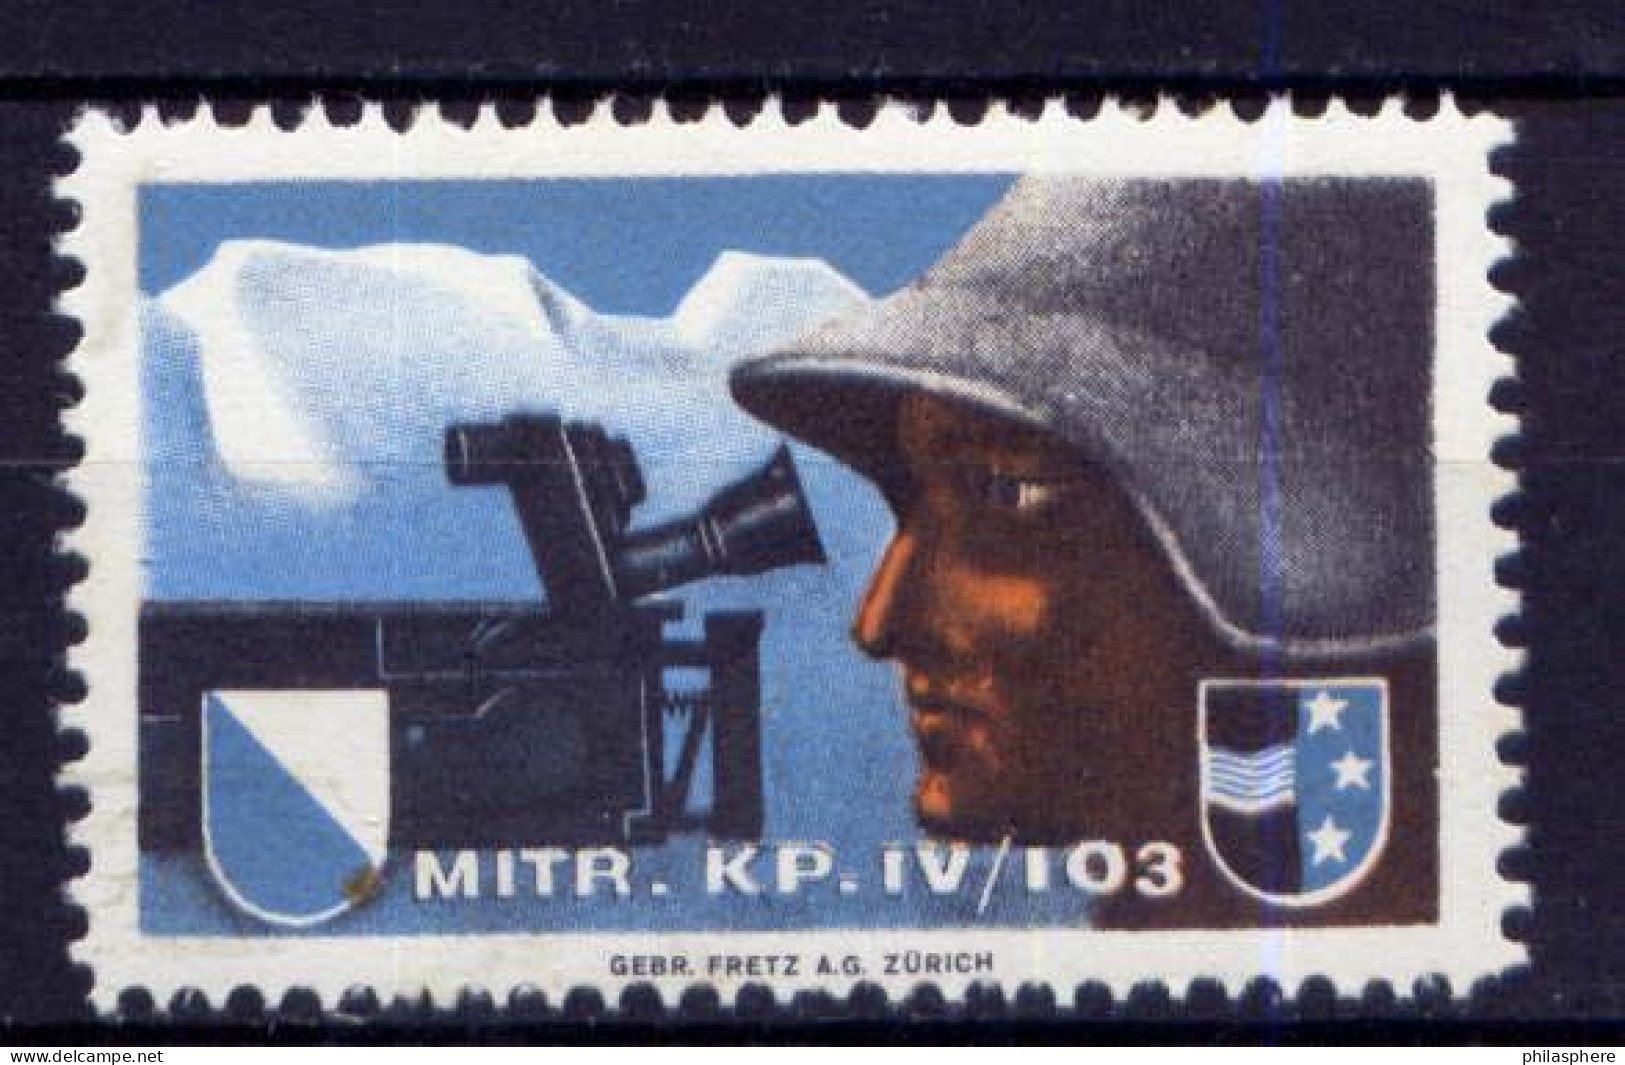 Schweiz  Soldatenbriefmarke             **  MNH            (2139) - Vignetten